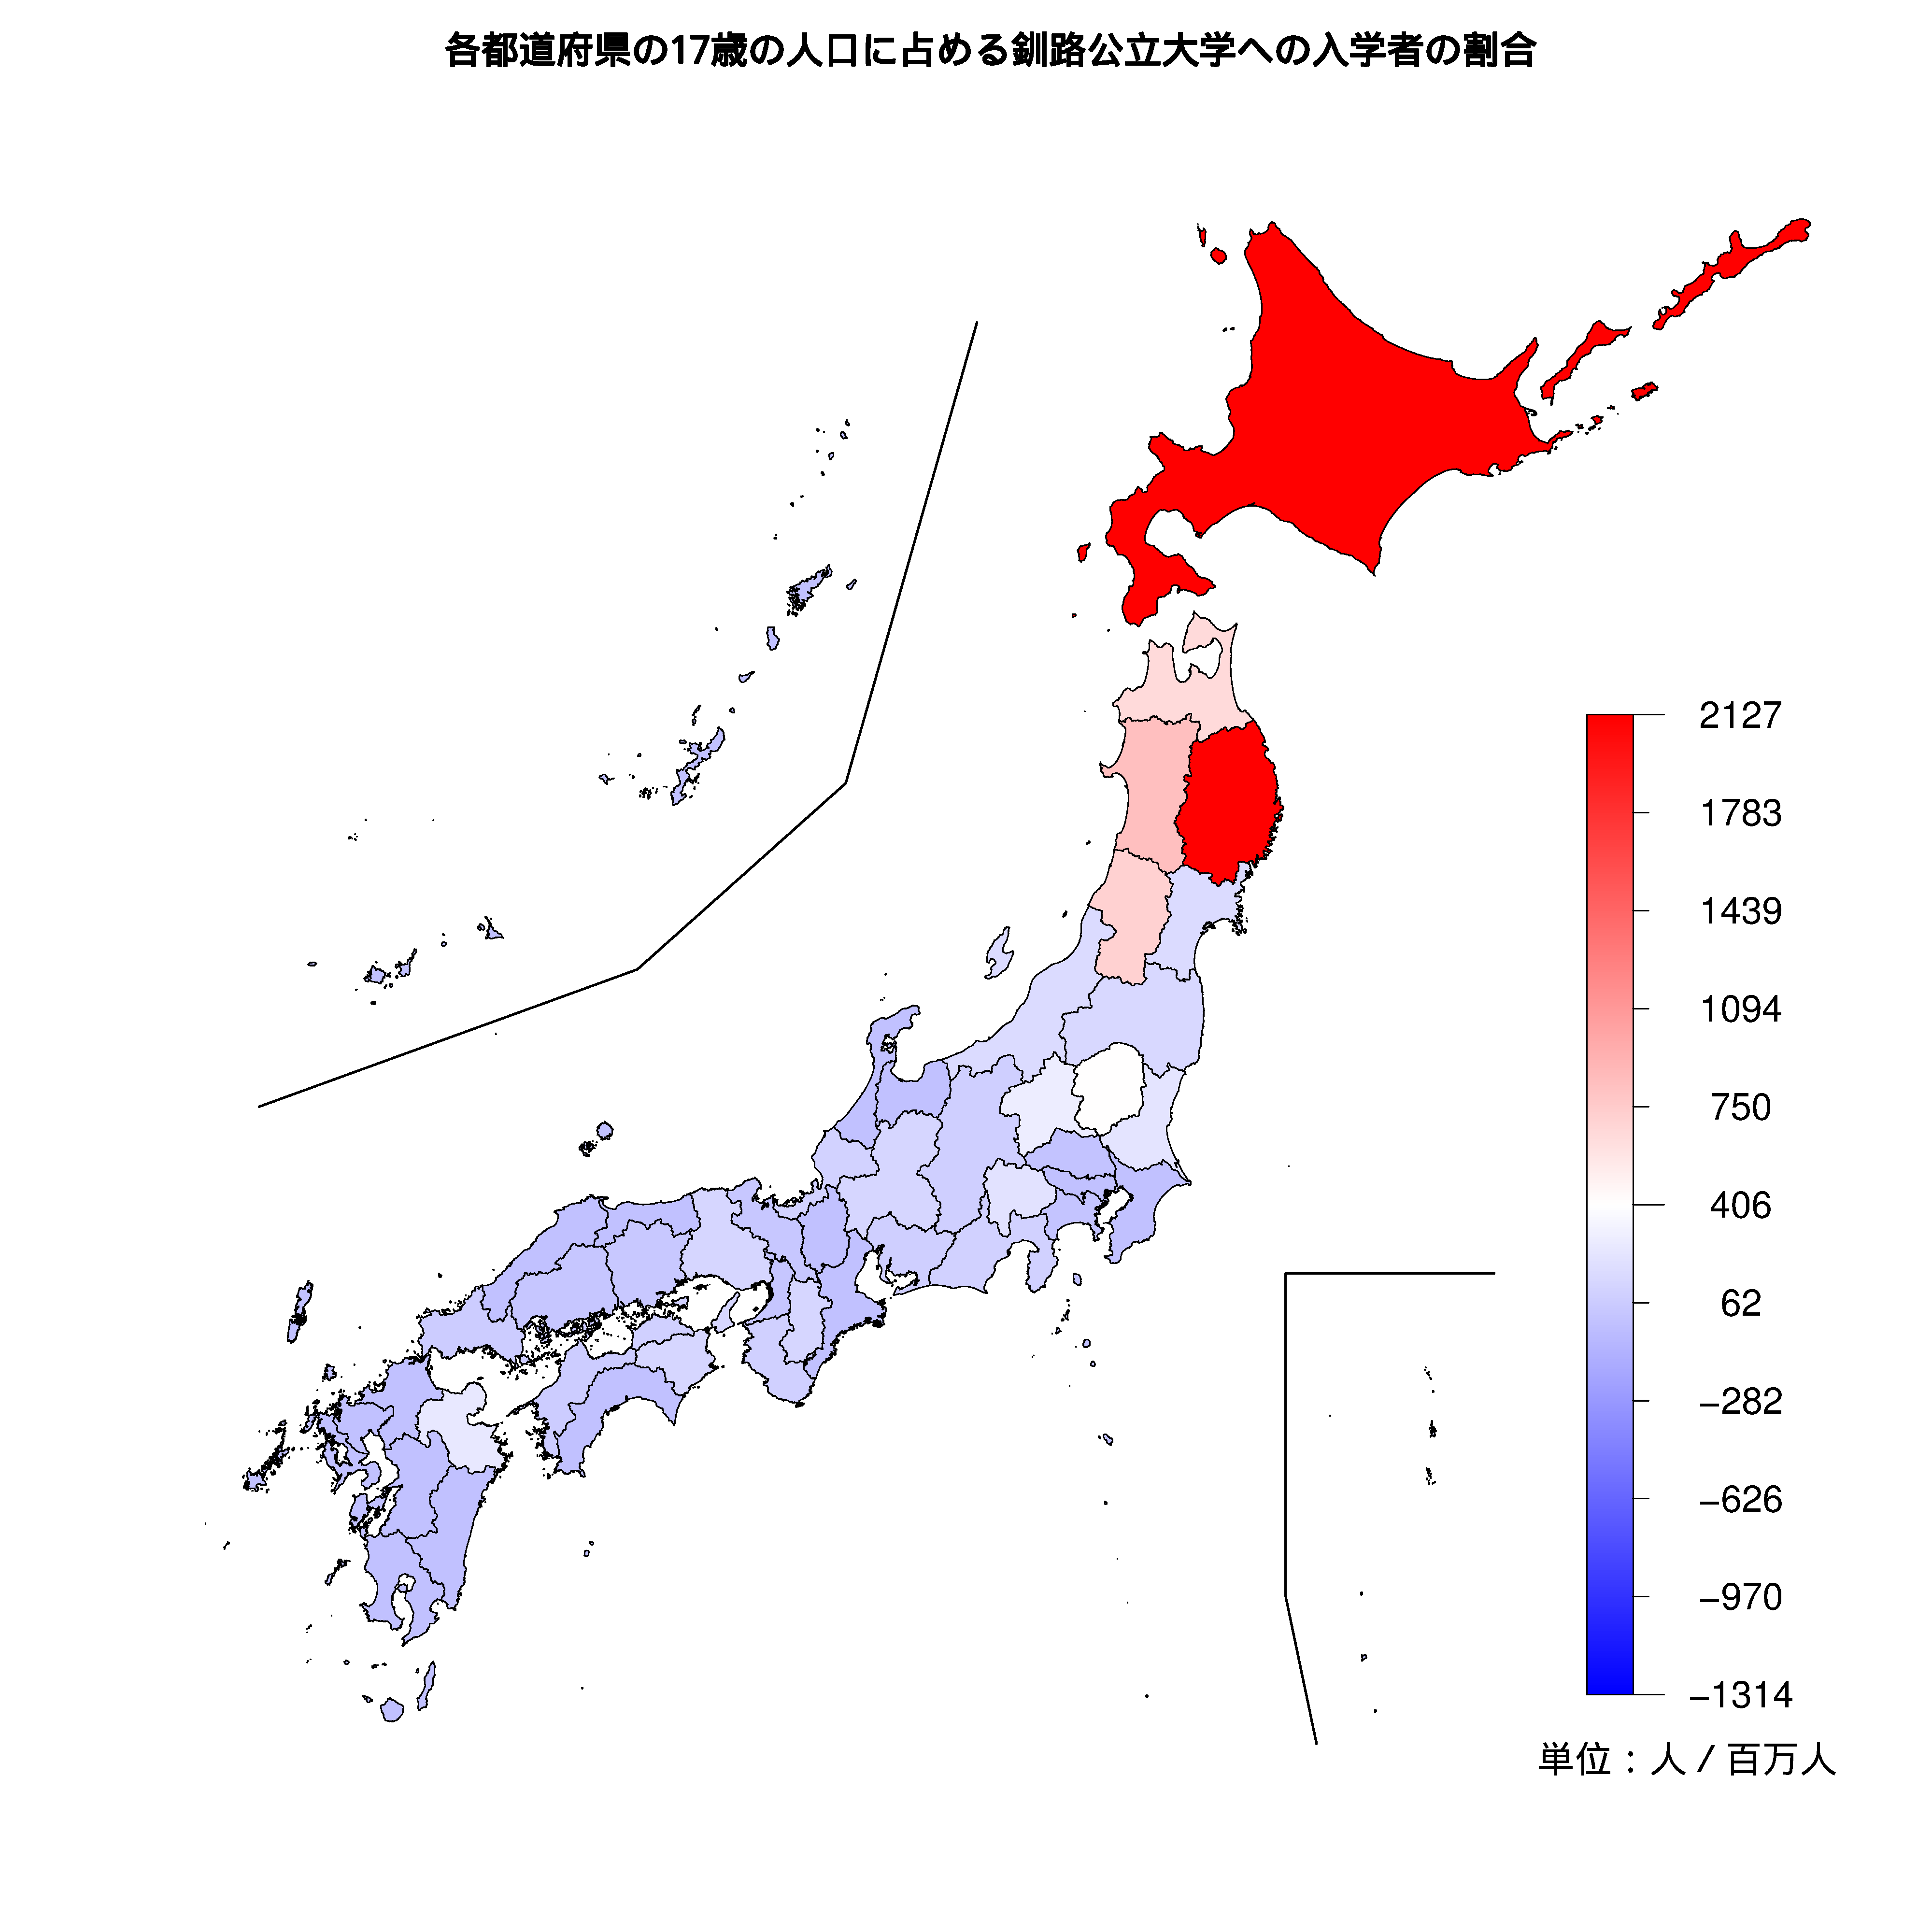 釧路公立大学への入学者が多い都道府県の色分け地図